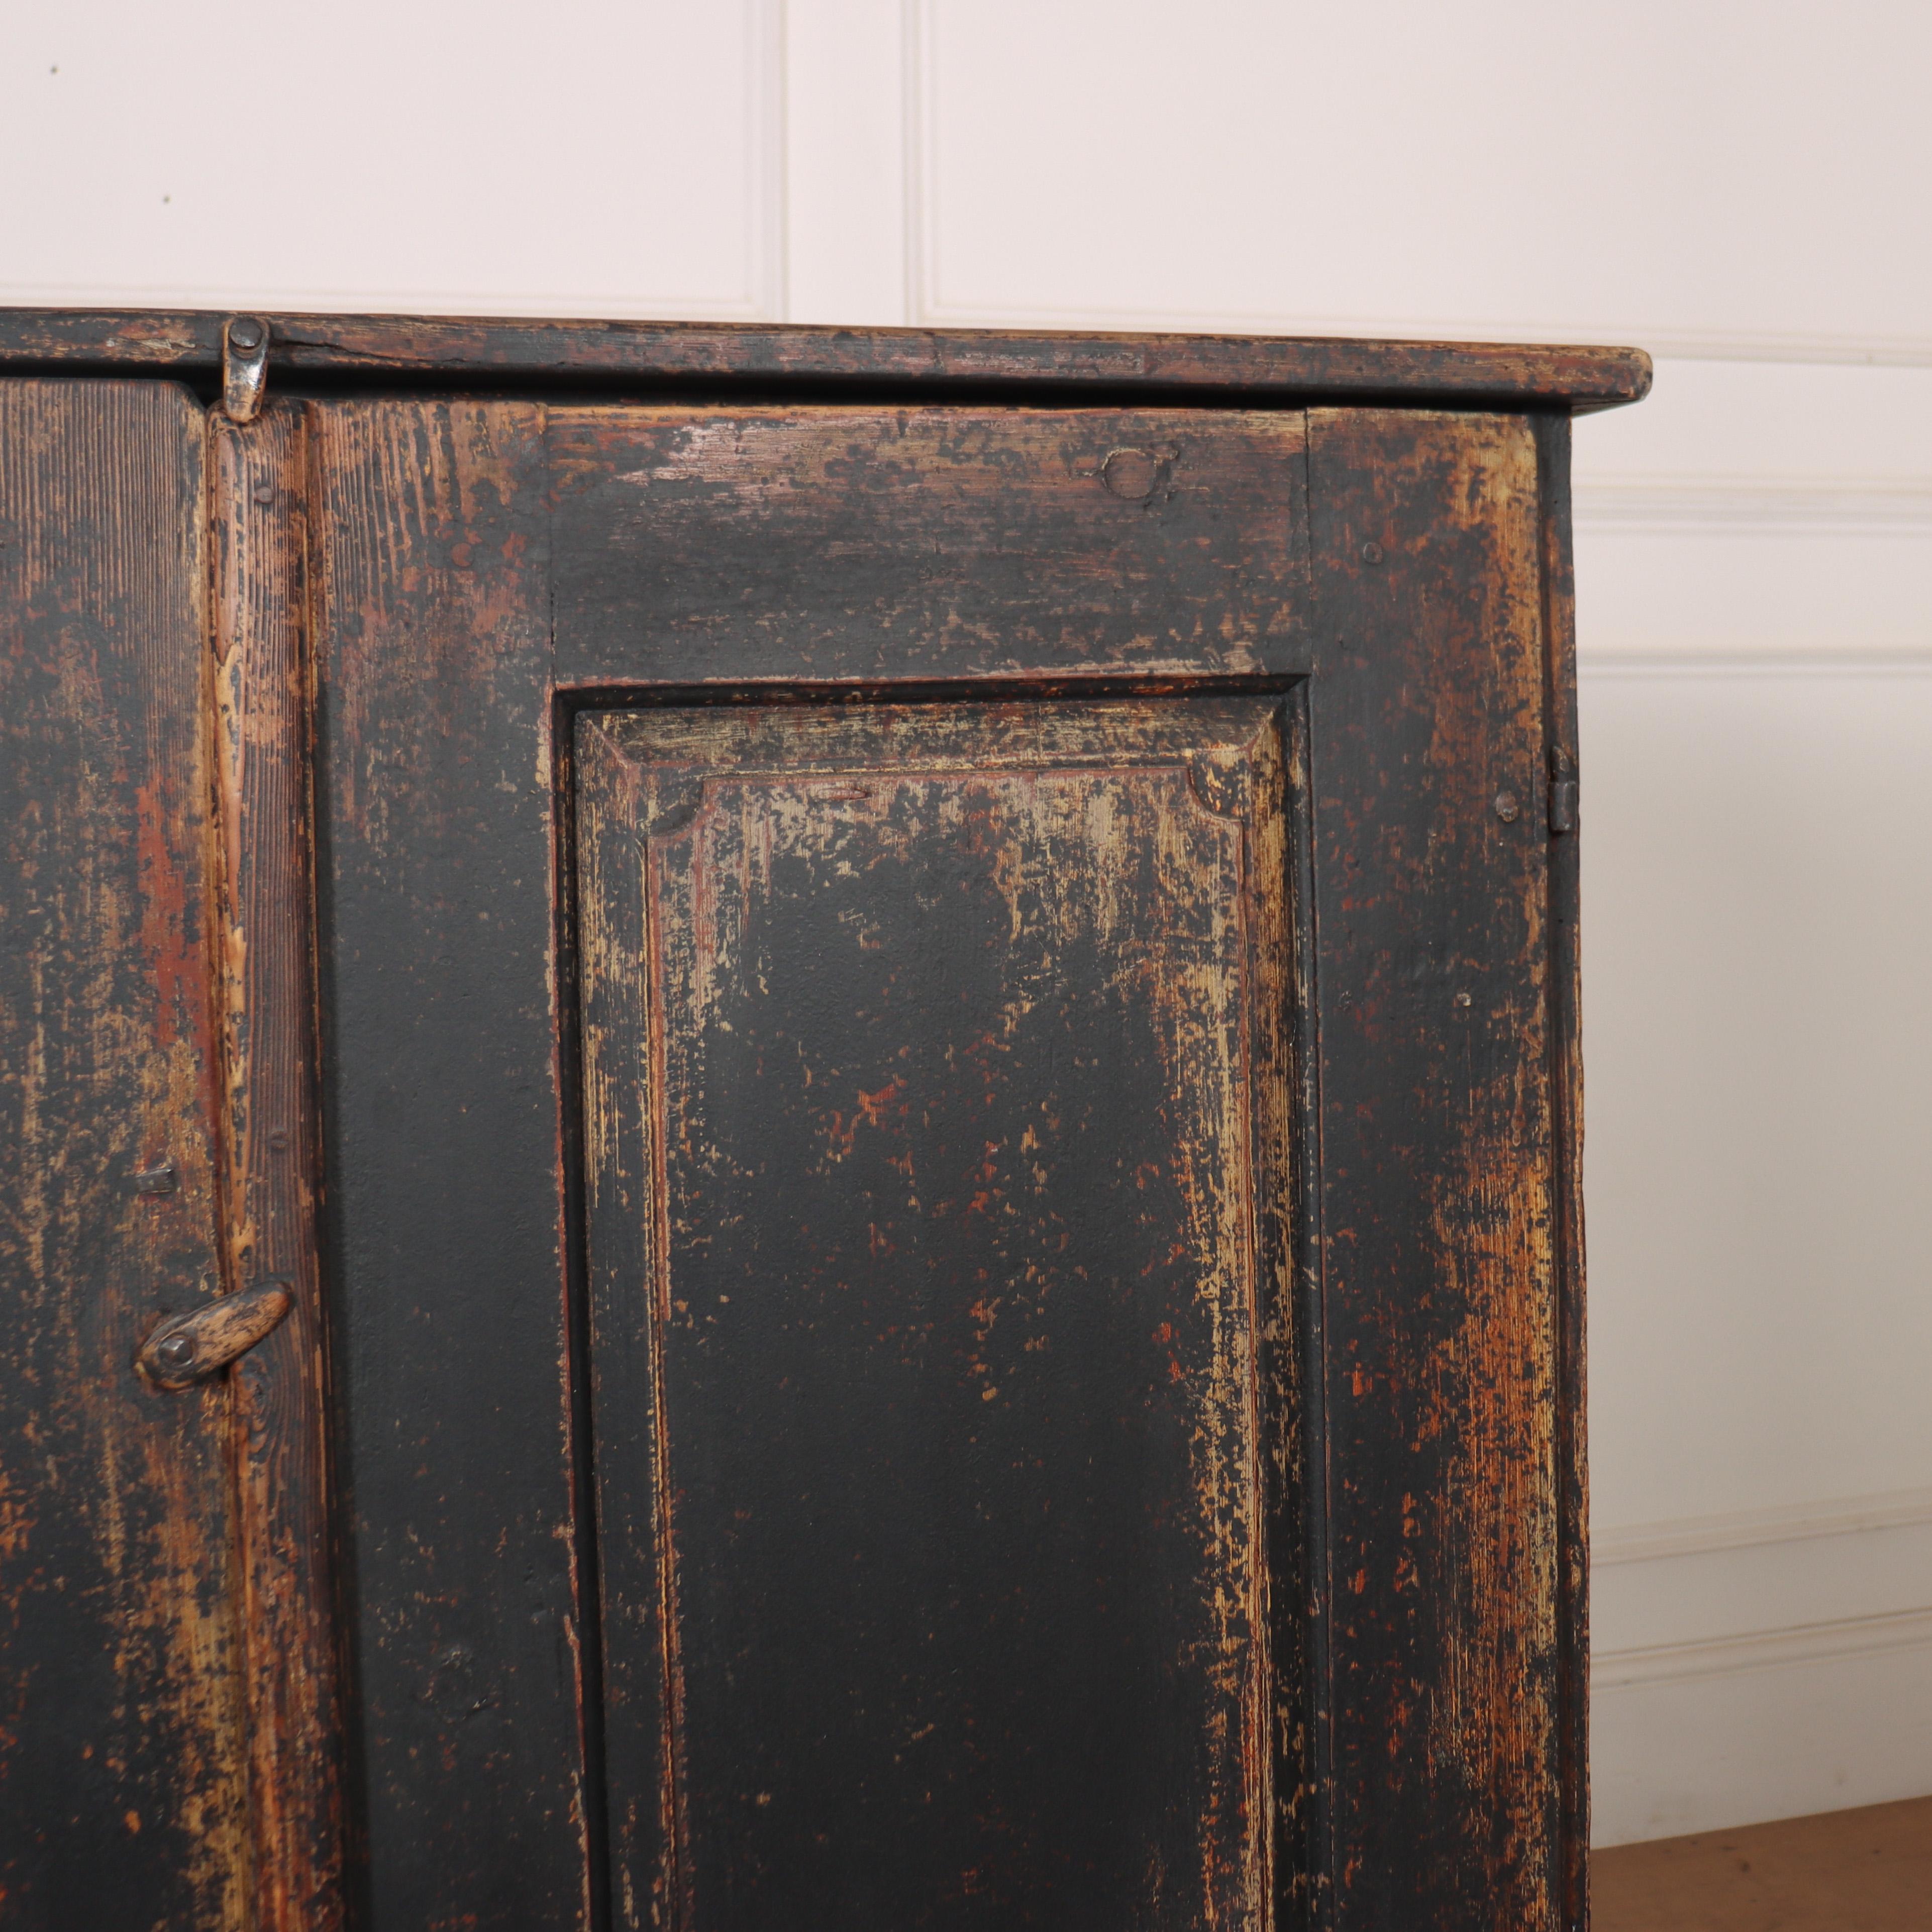 Magnifique armoire à linge suédoise en pin peint à deux portes du C.I.C.. 1780.

Référence : 7968

Dimensions
41 pouces (104 cm) de large
20 pouces (51 cms) de profondeur
43.5 pouces (110 cm) de haut